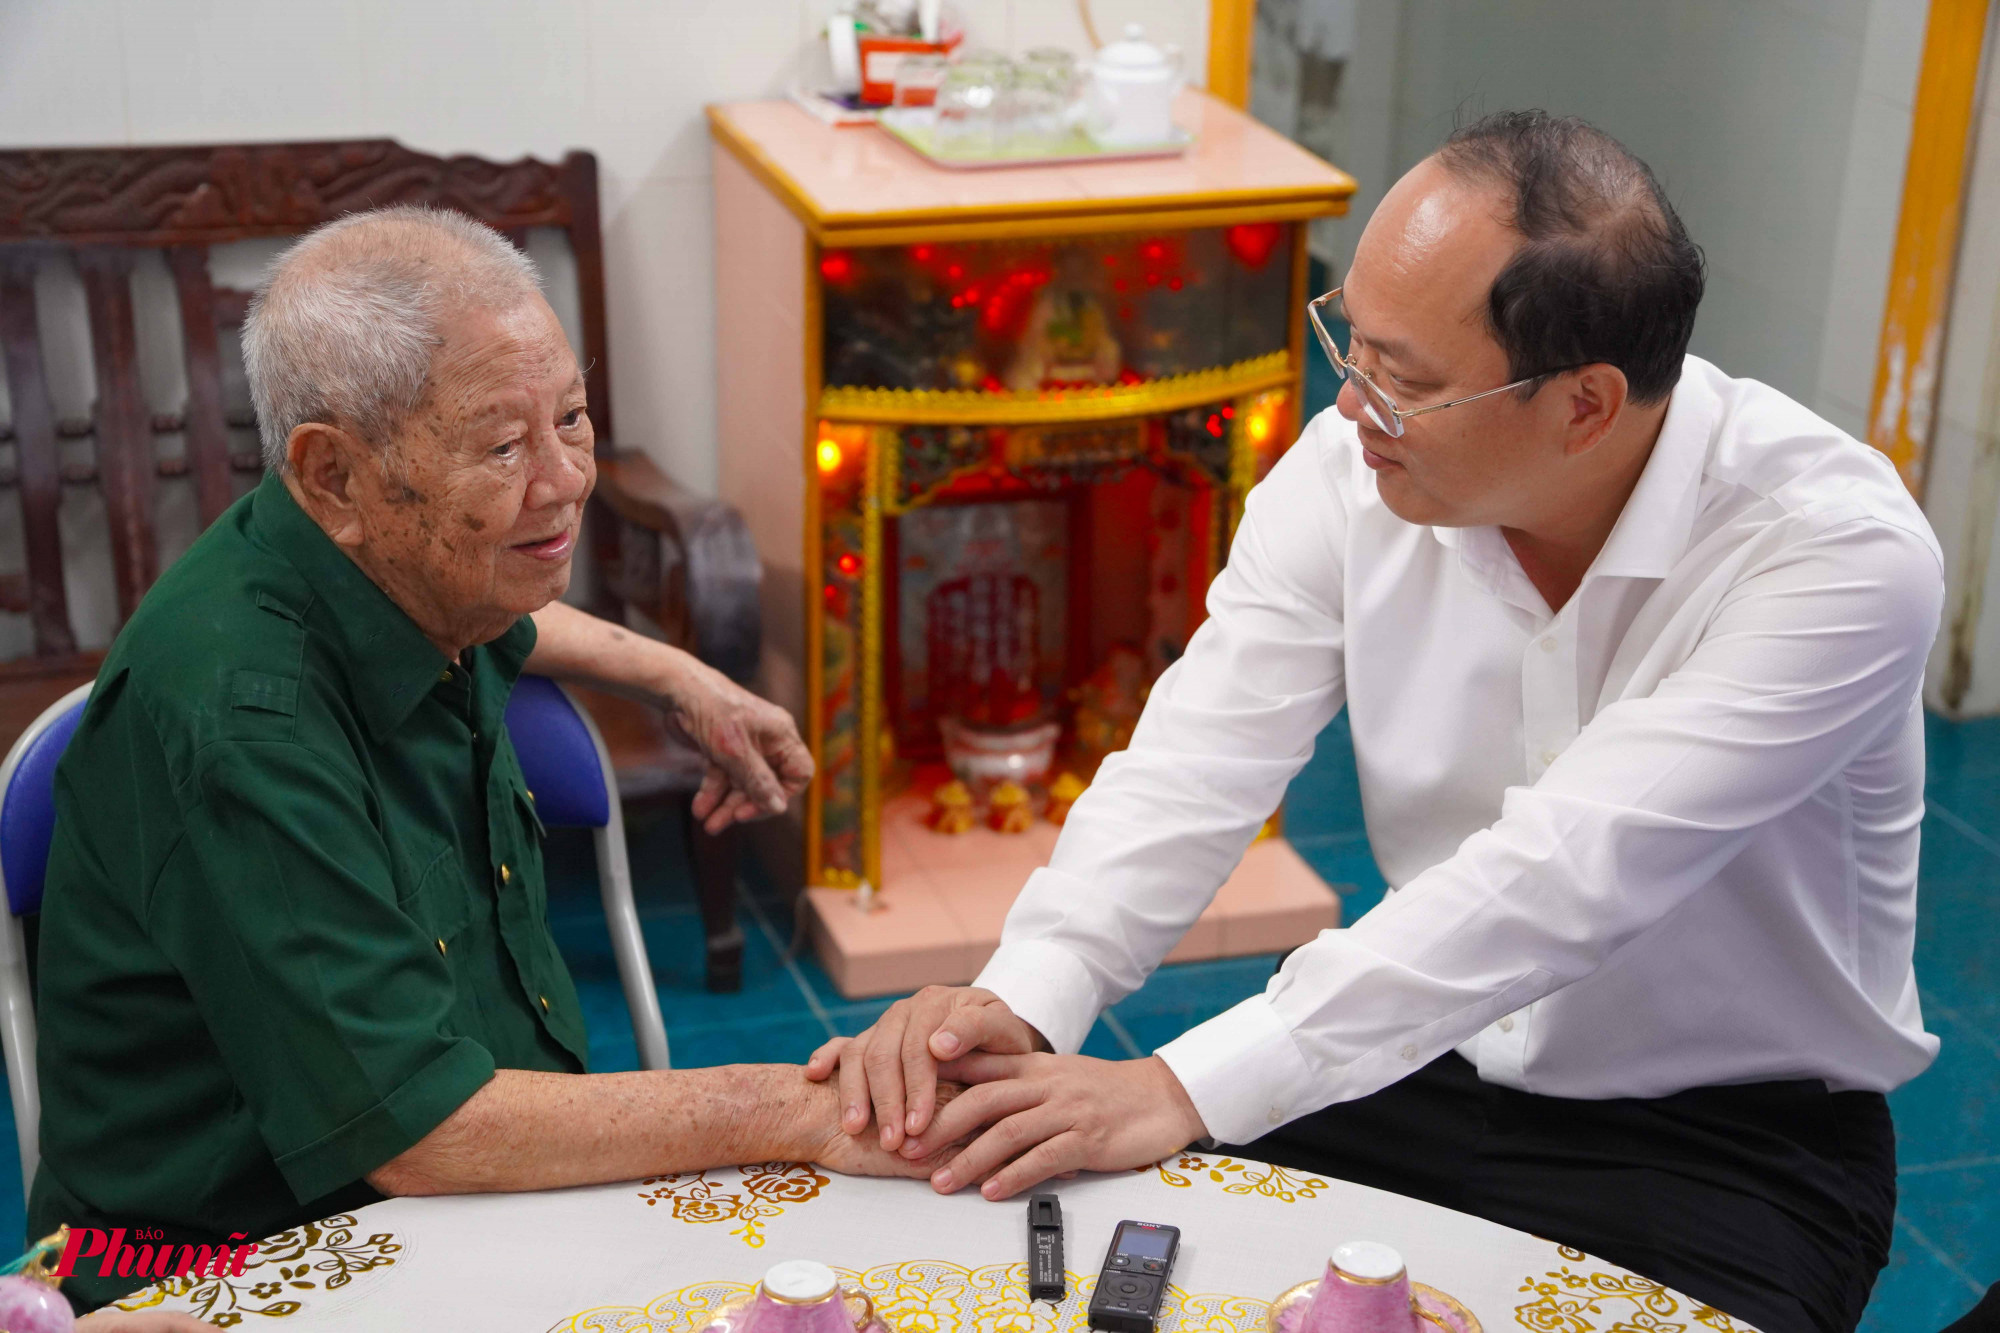 Ông Nguyễn Hồ Hải - Phó bí thư Thành ủy TPHCM, hỏi thăm tình hình sức khoẻ và chúc ông tiếp tục sống vui, khoẻ cùng con cháu.